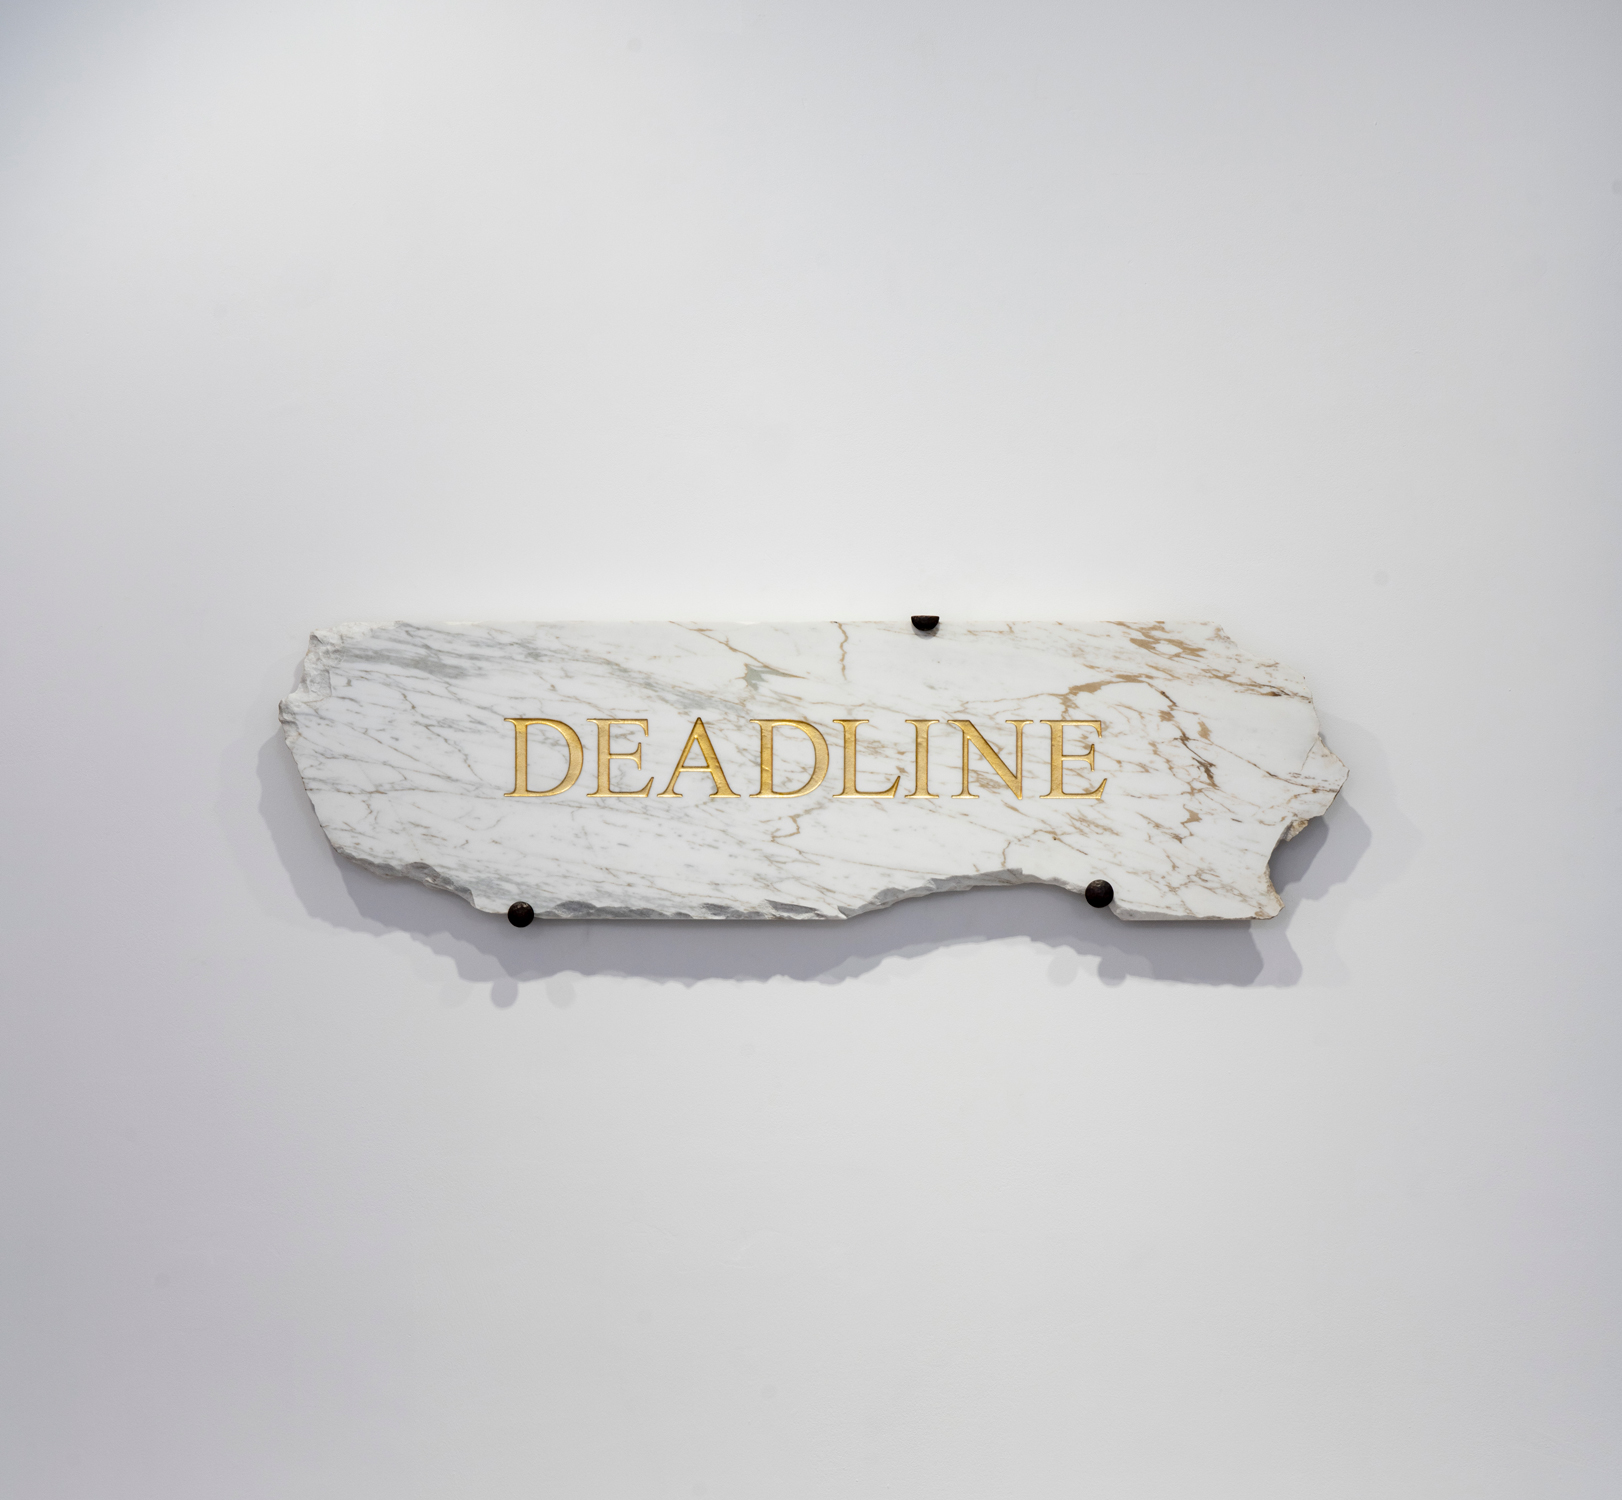 Deadline, Stefan Nikolaev